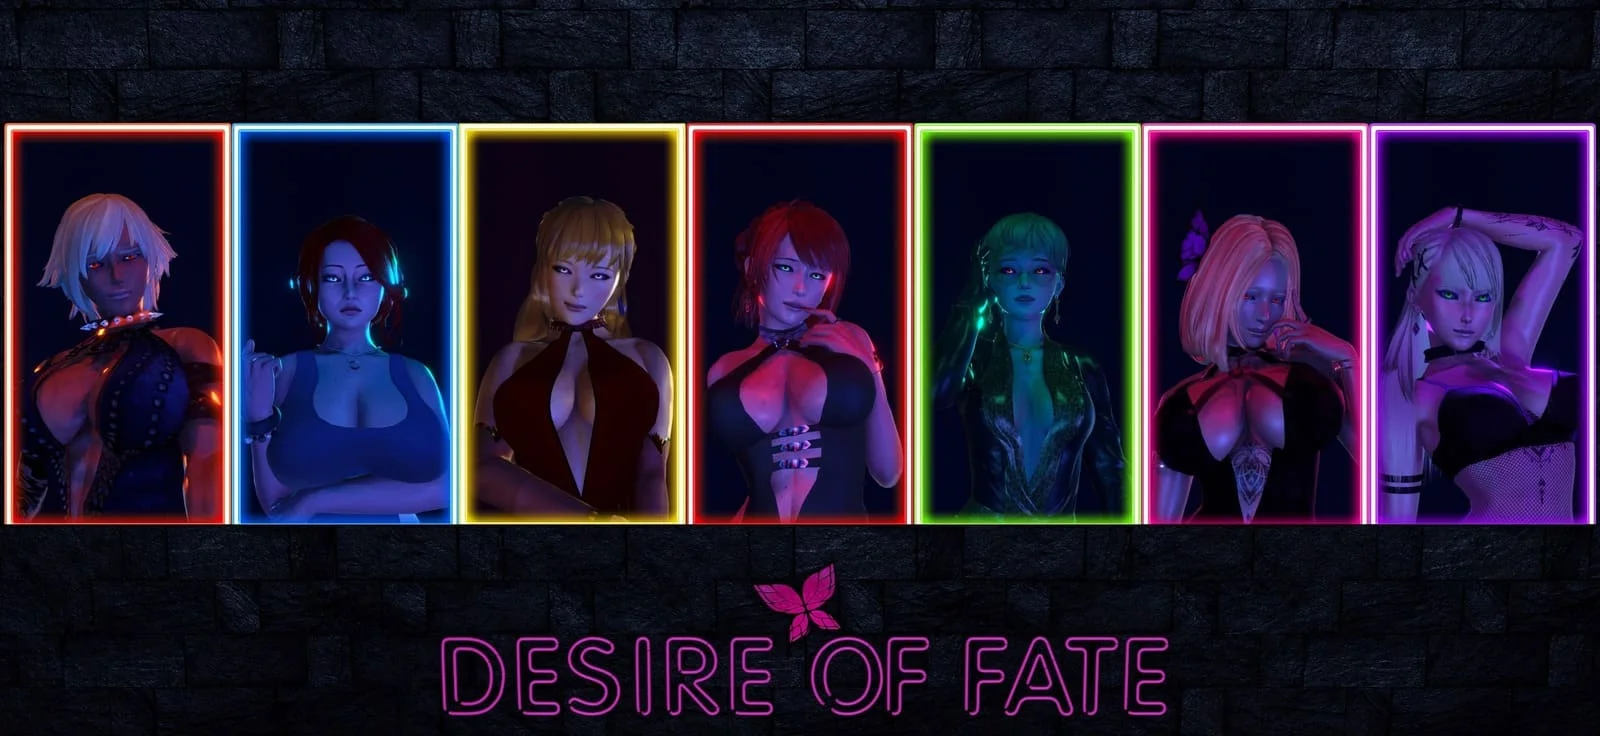 Download KKpotato - Desire of Fate - Version Ep.2 v.1